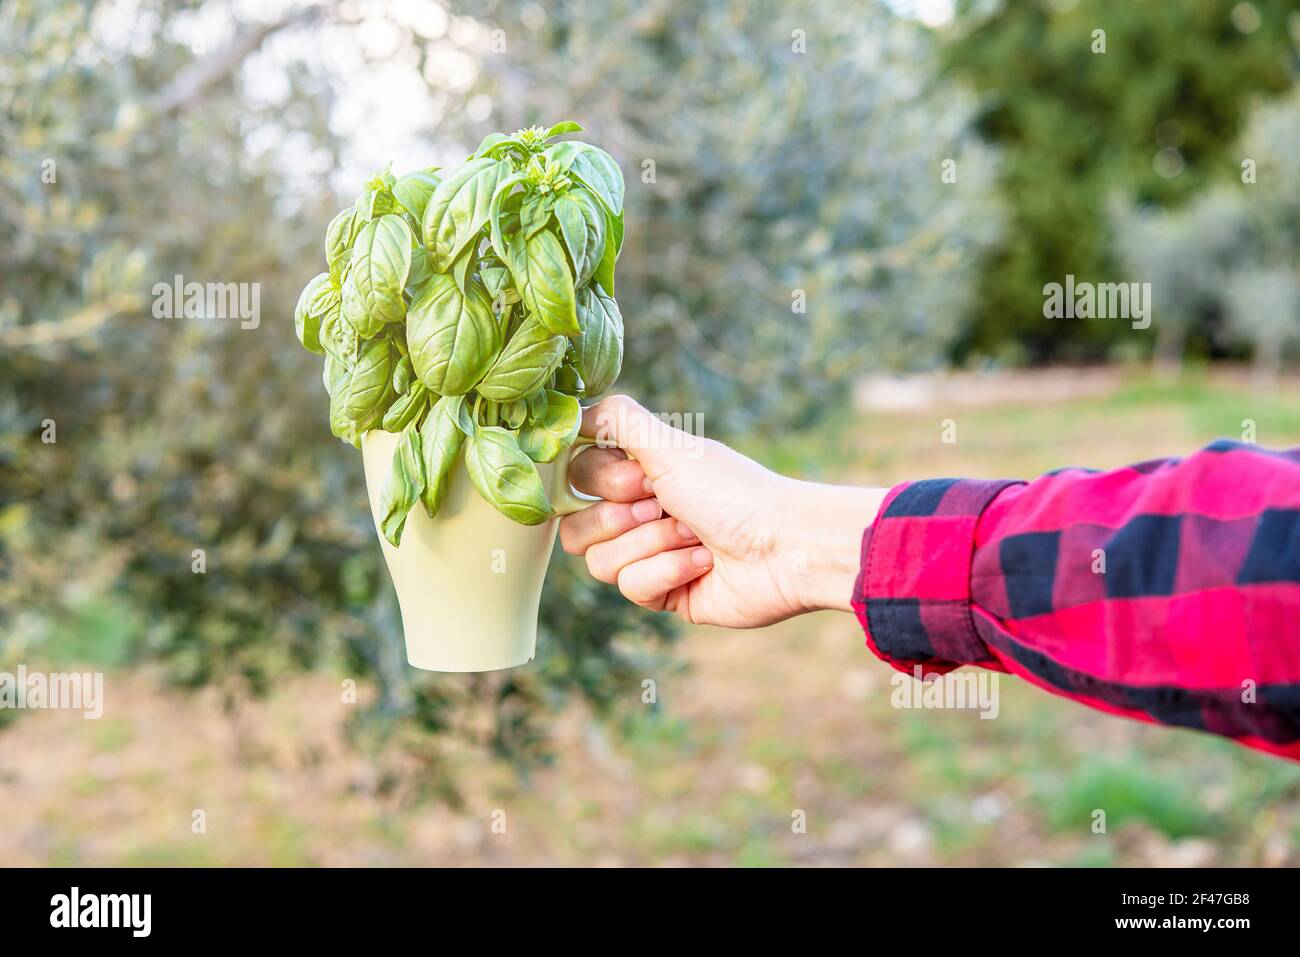 Die Hand hält einen Bund frischen Basilikums in einer Tasse In einem Gemüsegarten Stockfoto